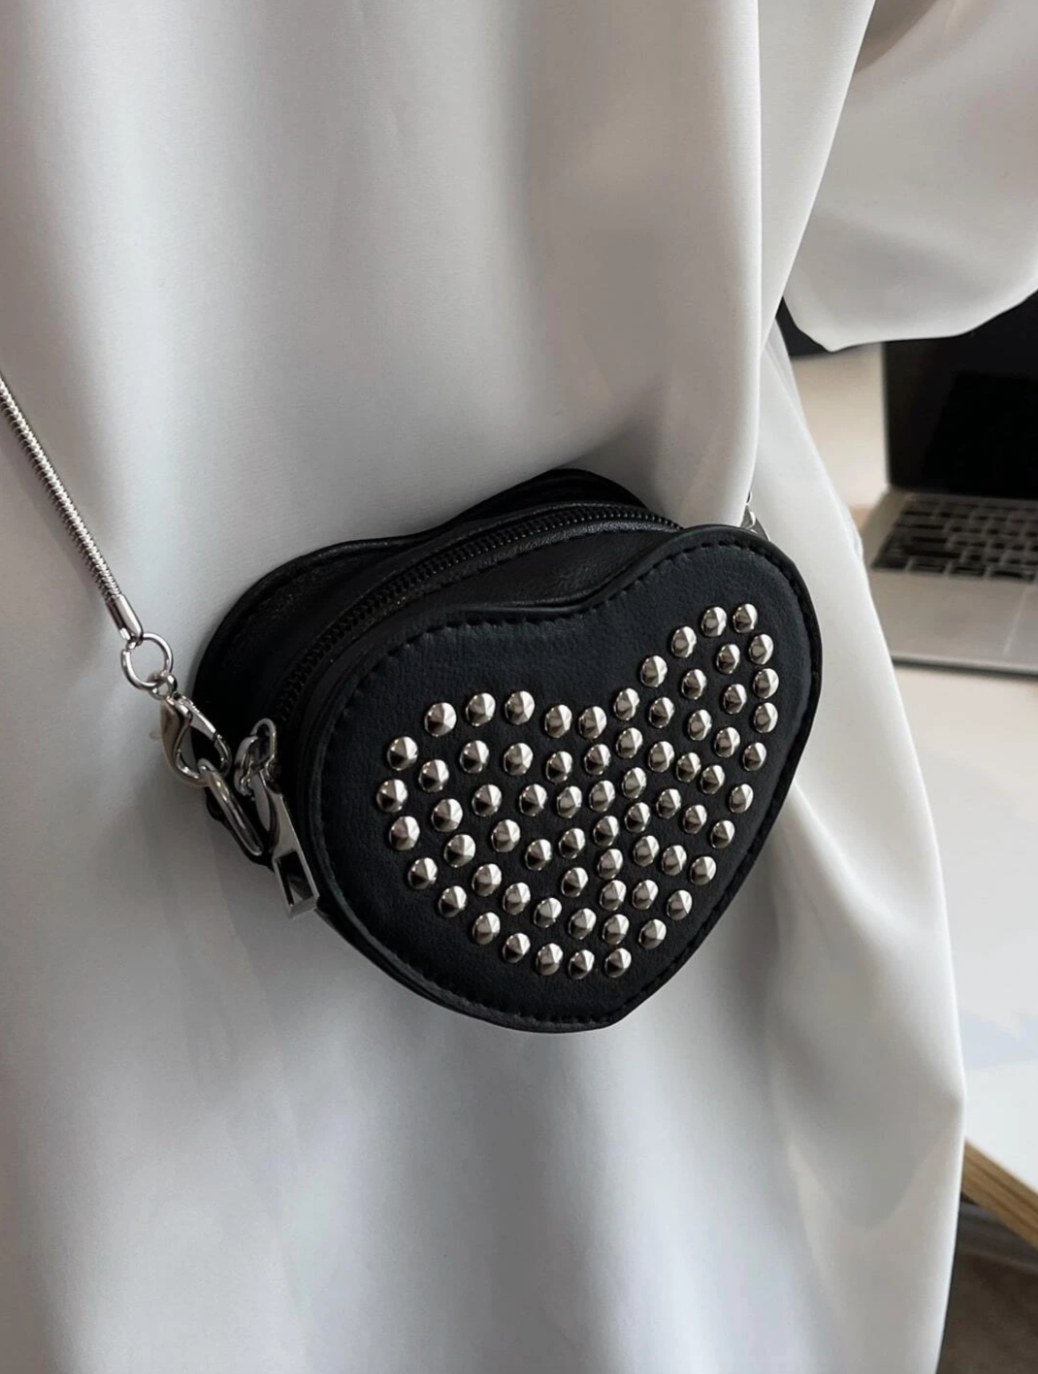 Mini Heart Crossbody Bag